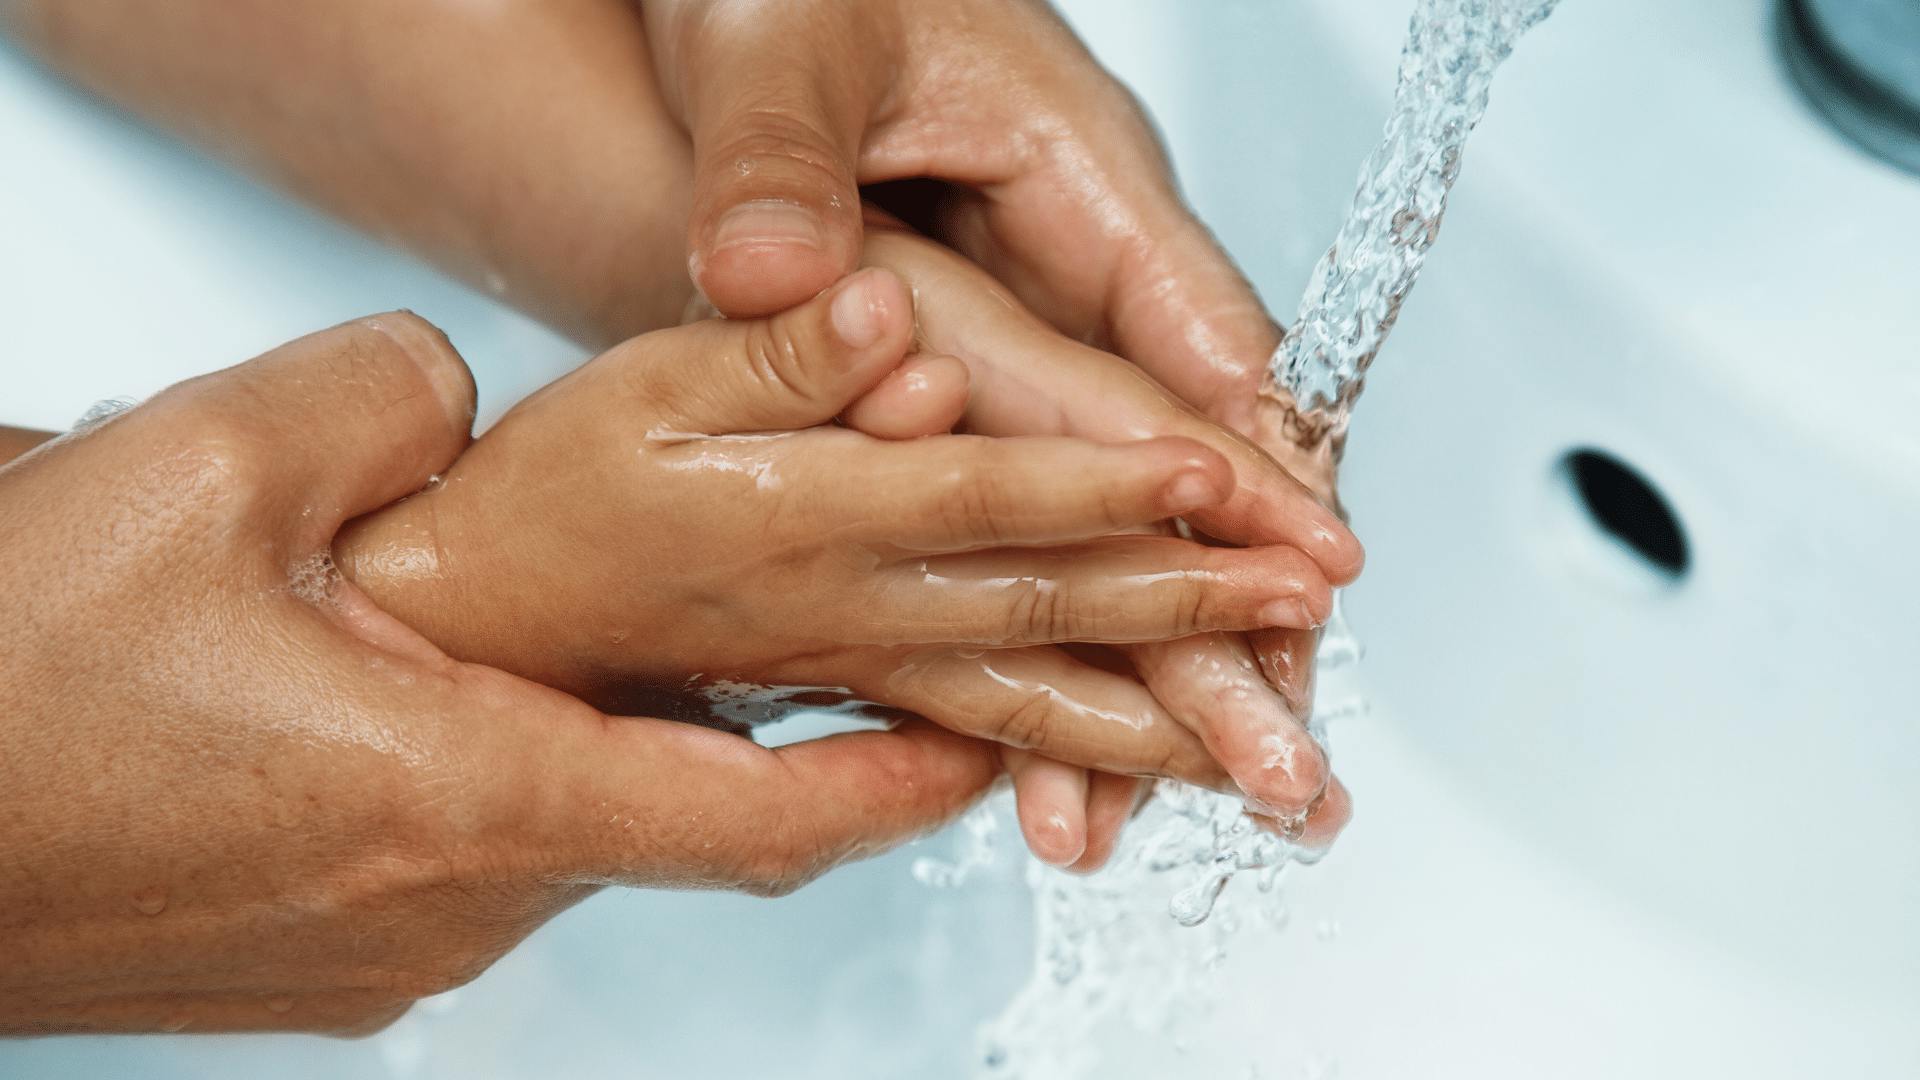 Гигиена мытья рук. Мытье рук. Чистые руки. Гигиена рук. Умывание рук.